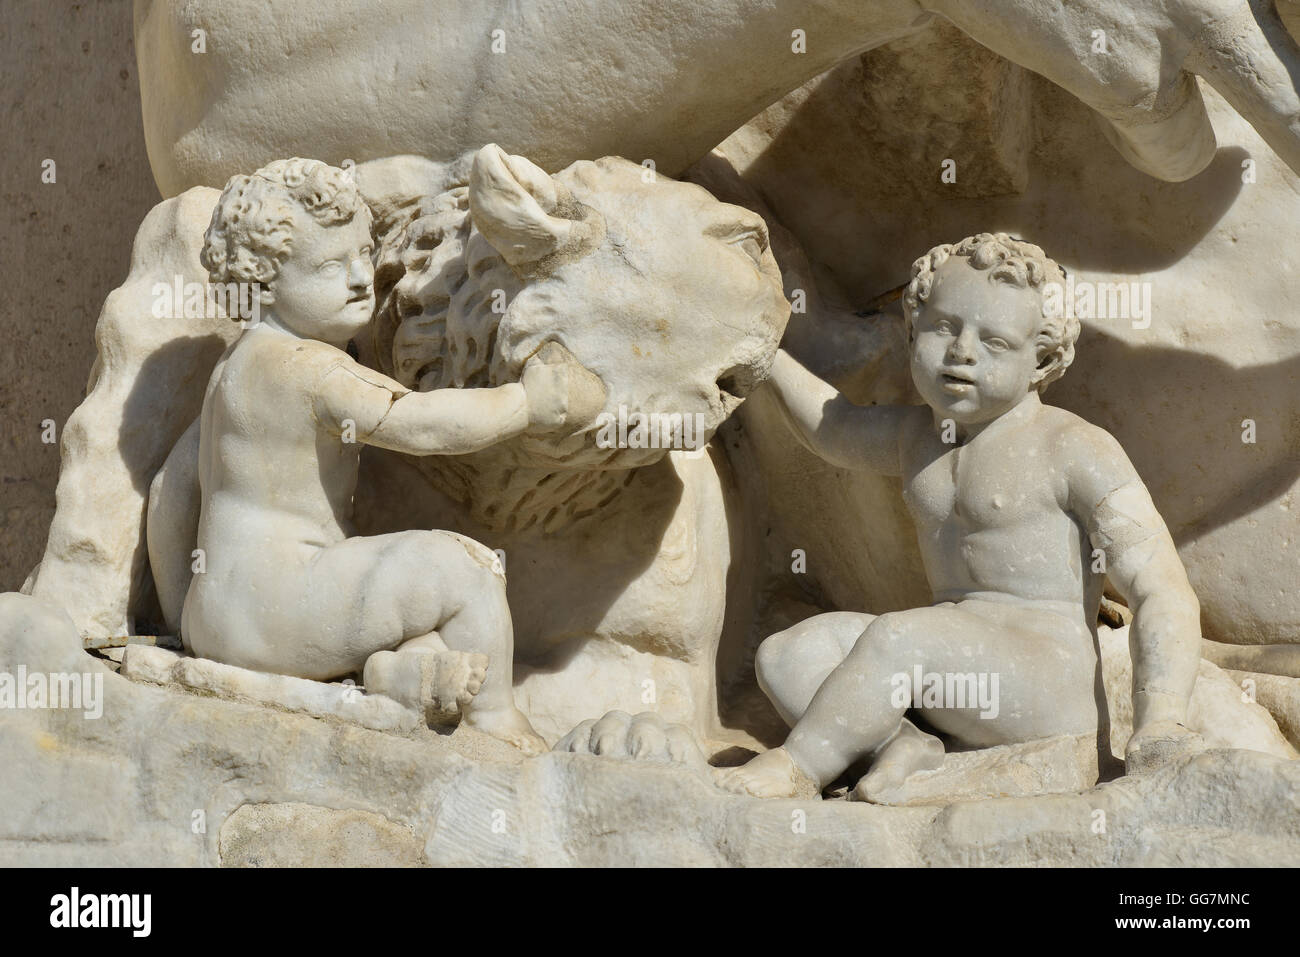 La leggendaria Lupa Capitolina con i gemelli Romolo e Remo, simboleggia la fondazione di Roma. Un antica scultura romana. Foto Stock